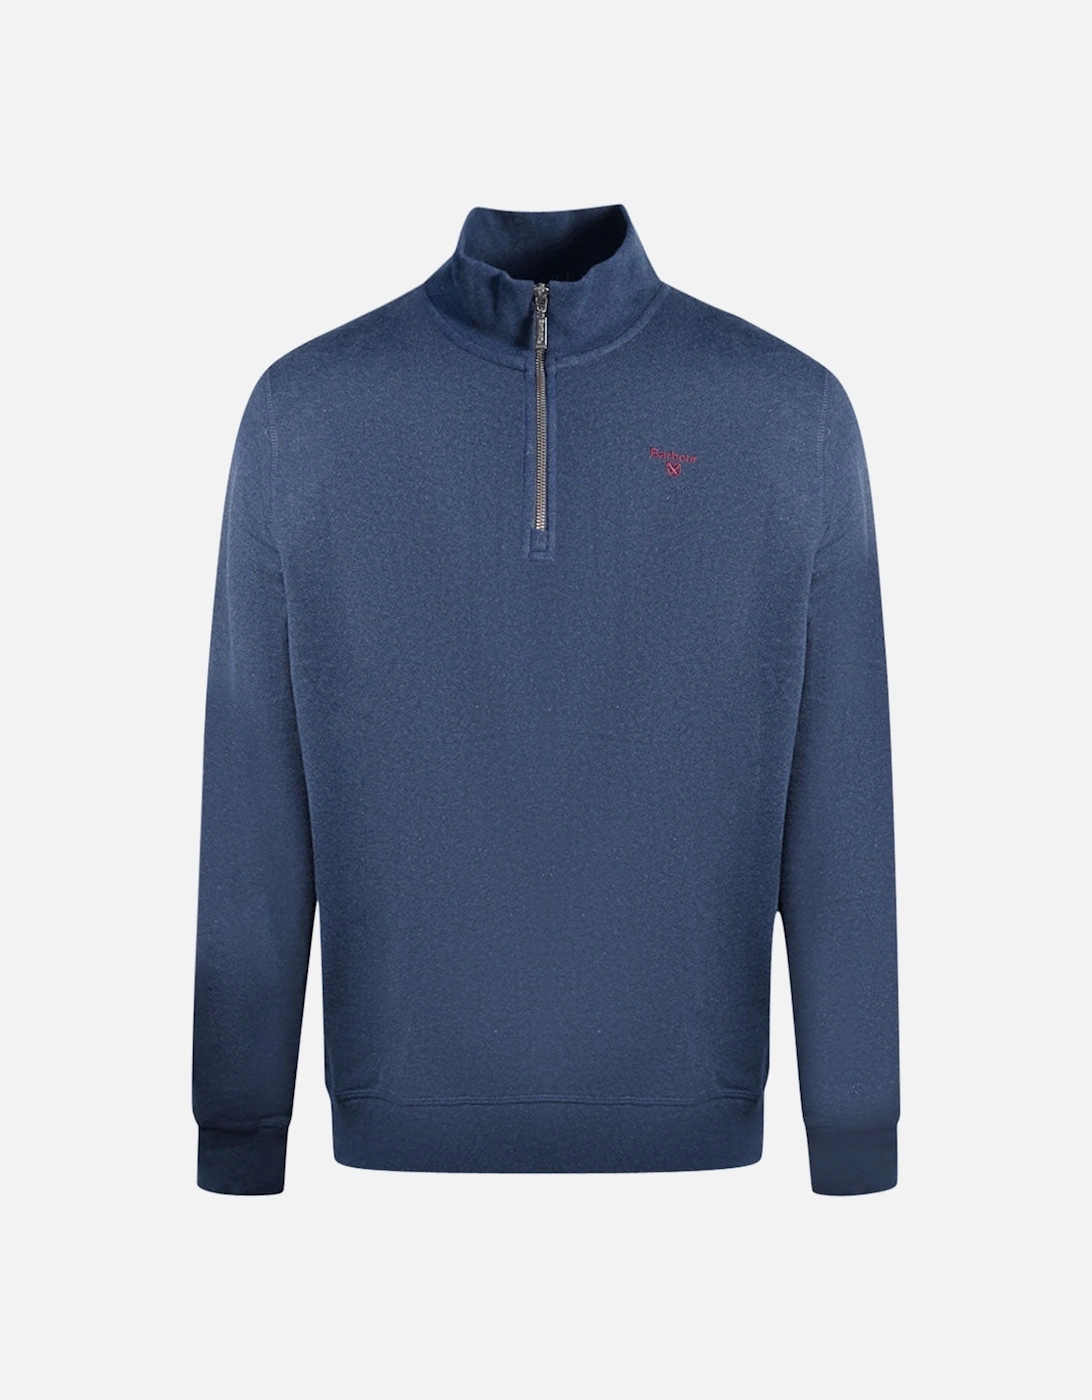 Starbeck Half Zip Navy Blue Sweatshirt, 3 of 2